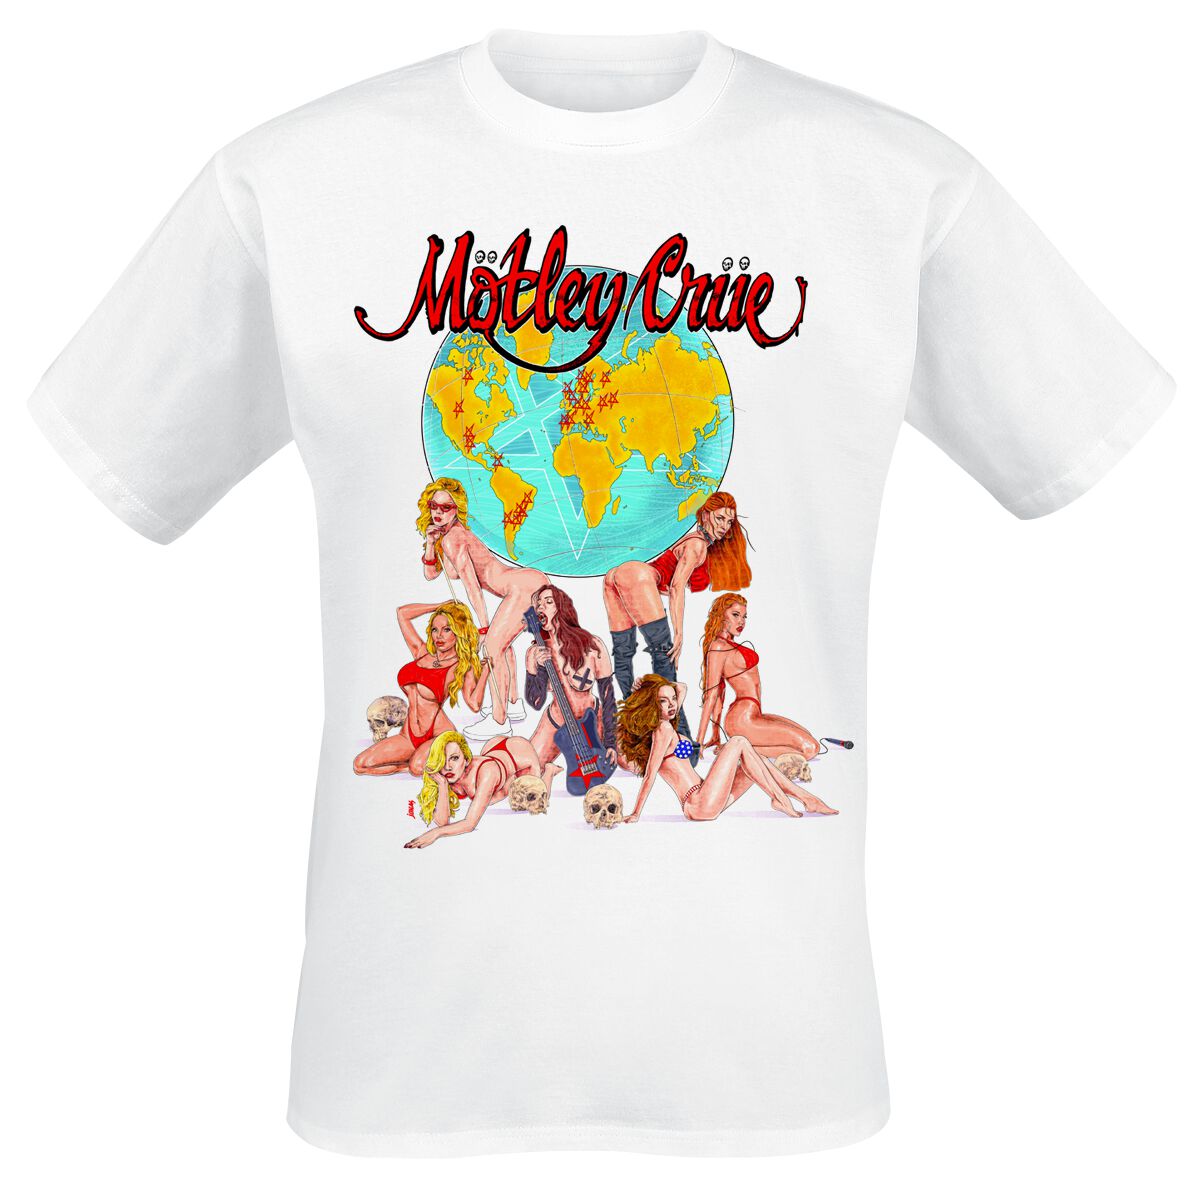 Mötley Crüe T-Shirt - Europe - S bis 4XL - für Männer - Größe 4XL - weiß  - Lizenziertes Merchandise!